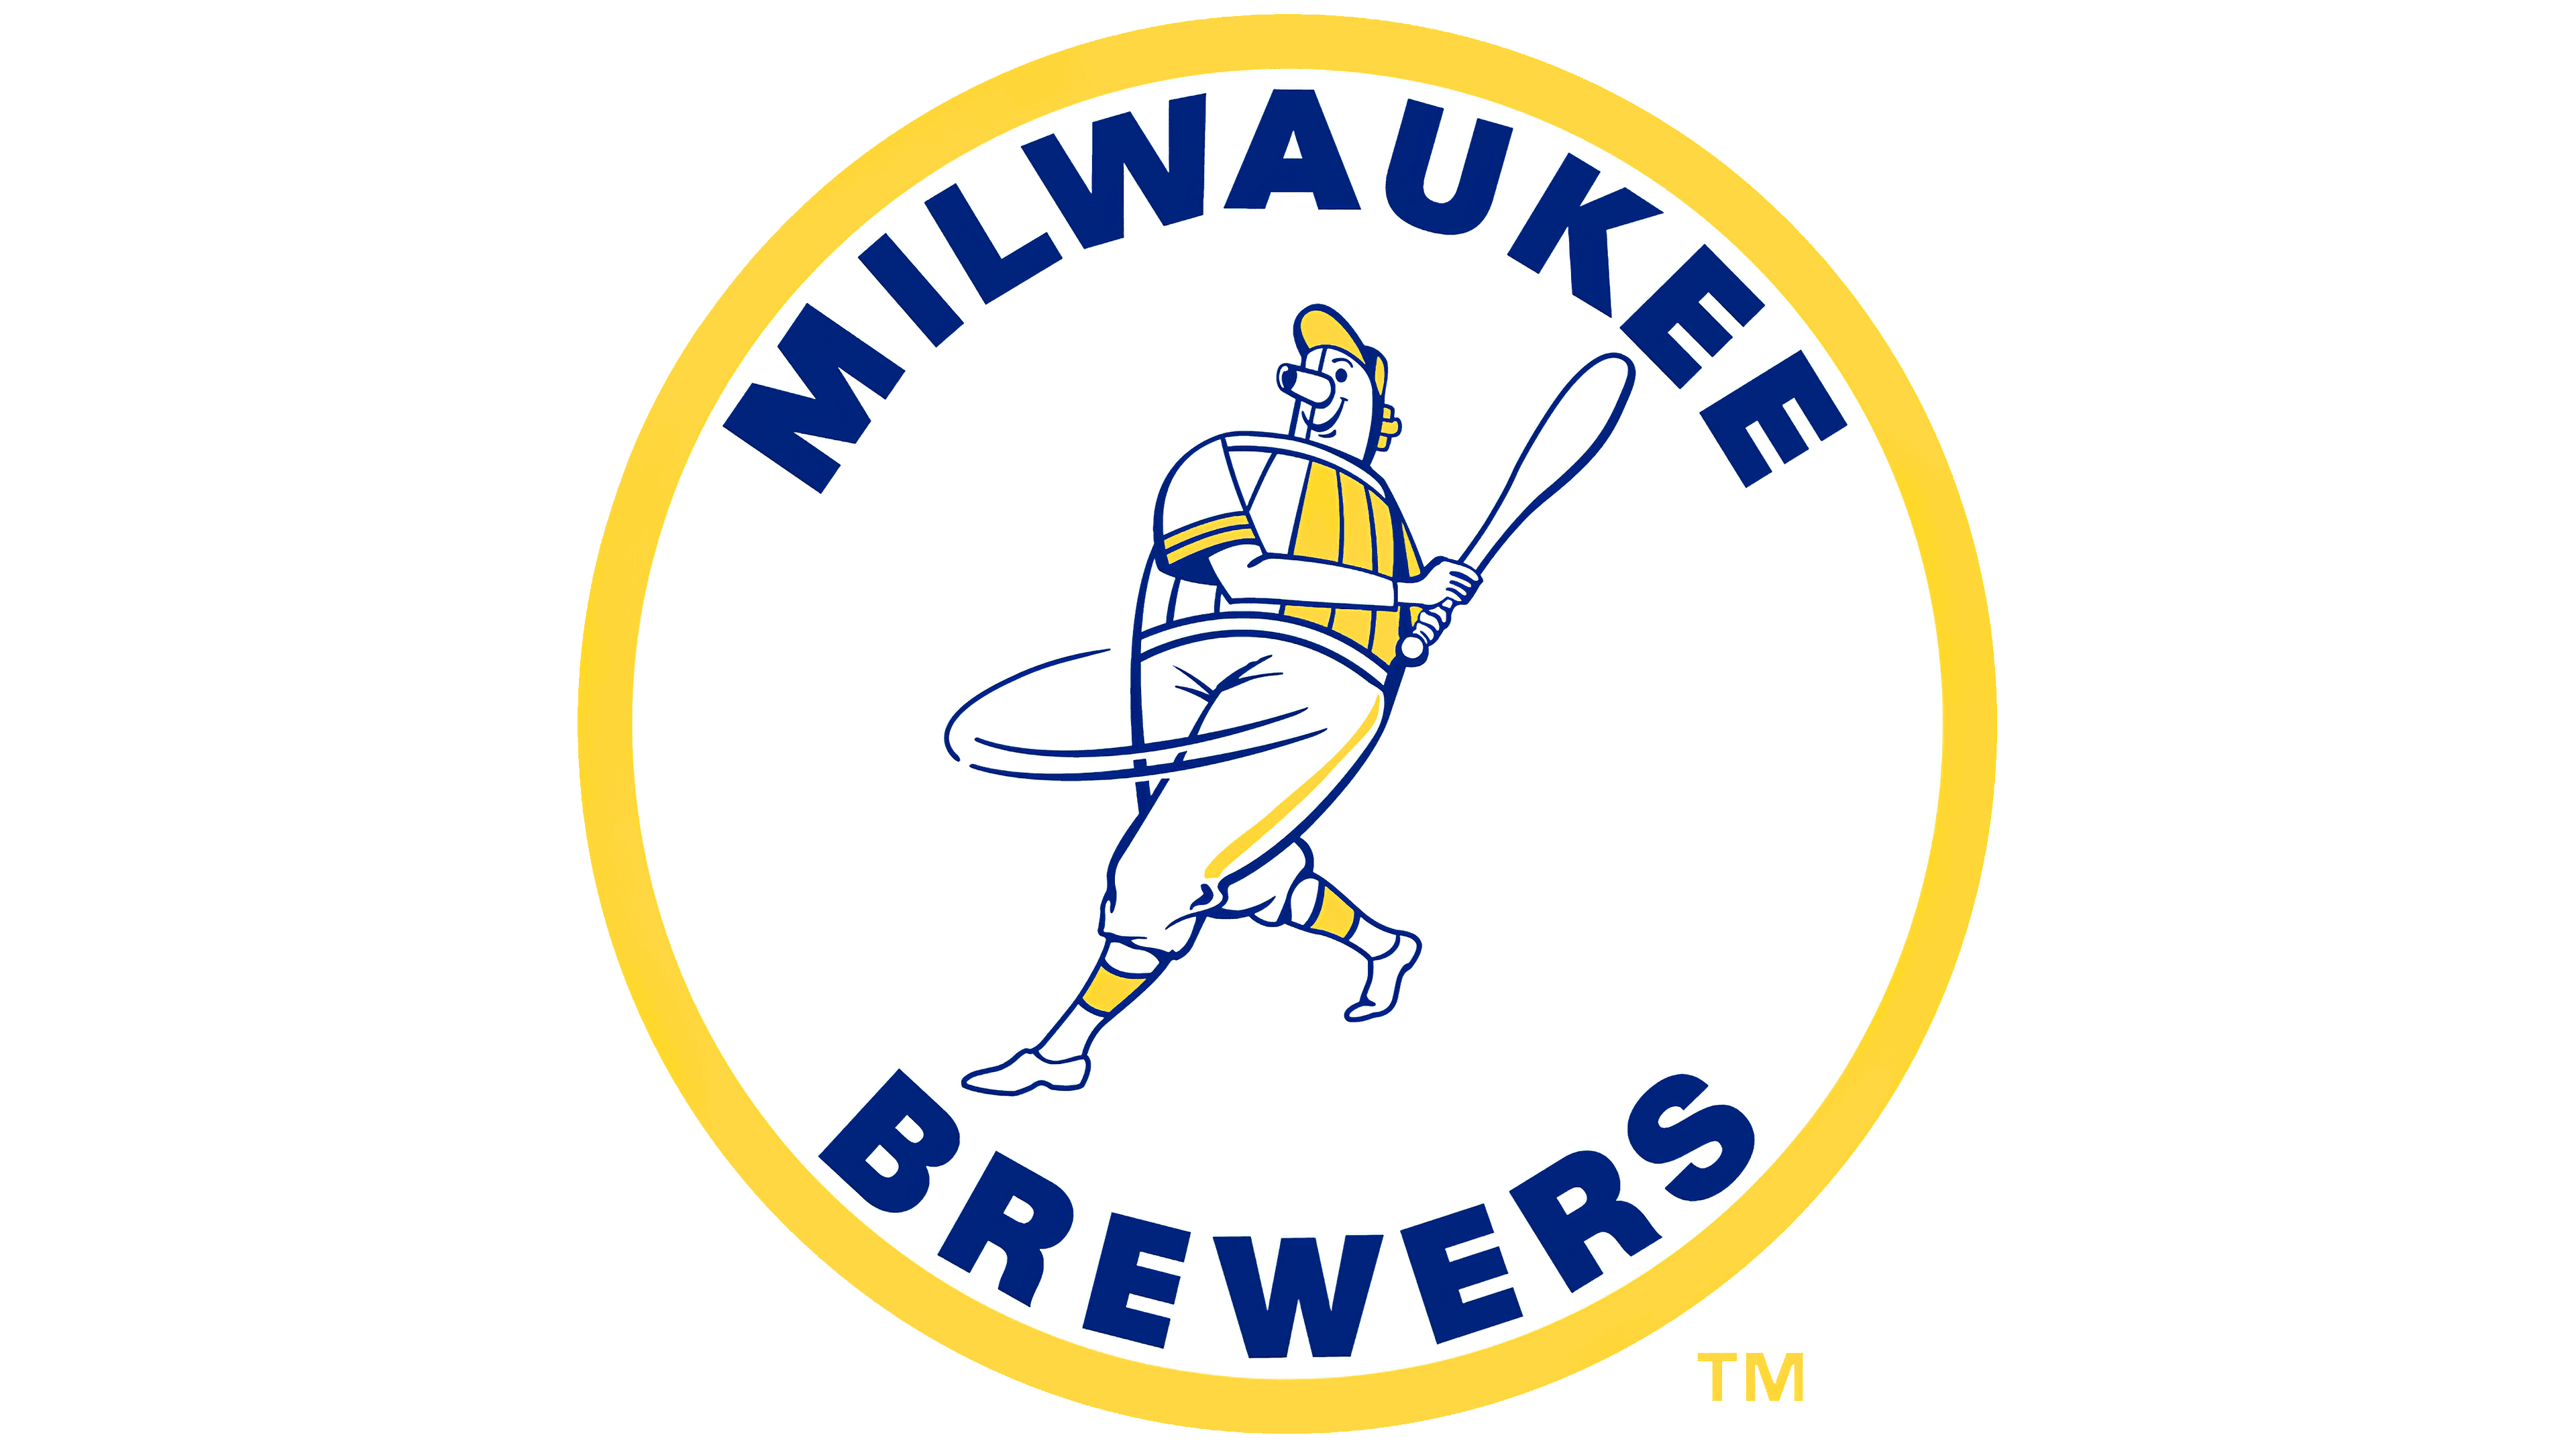 Milwaukee Brewers Logo Transparent Background - emsekflol.com